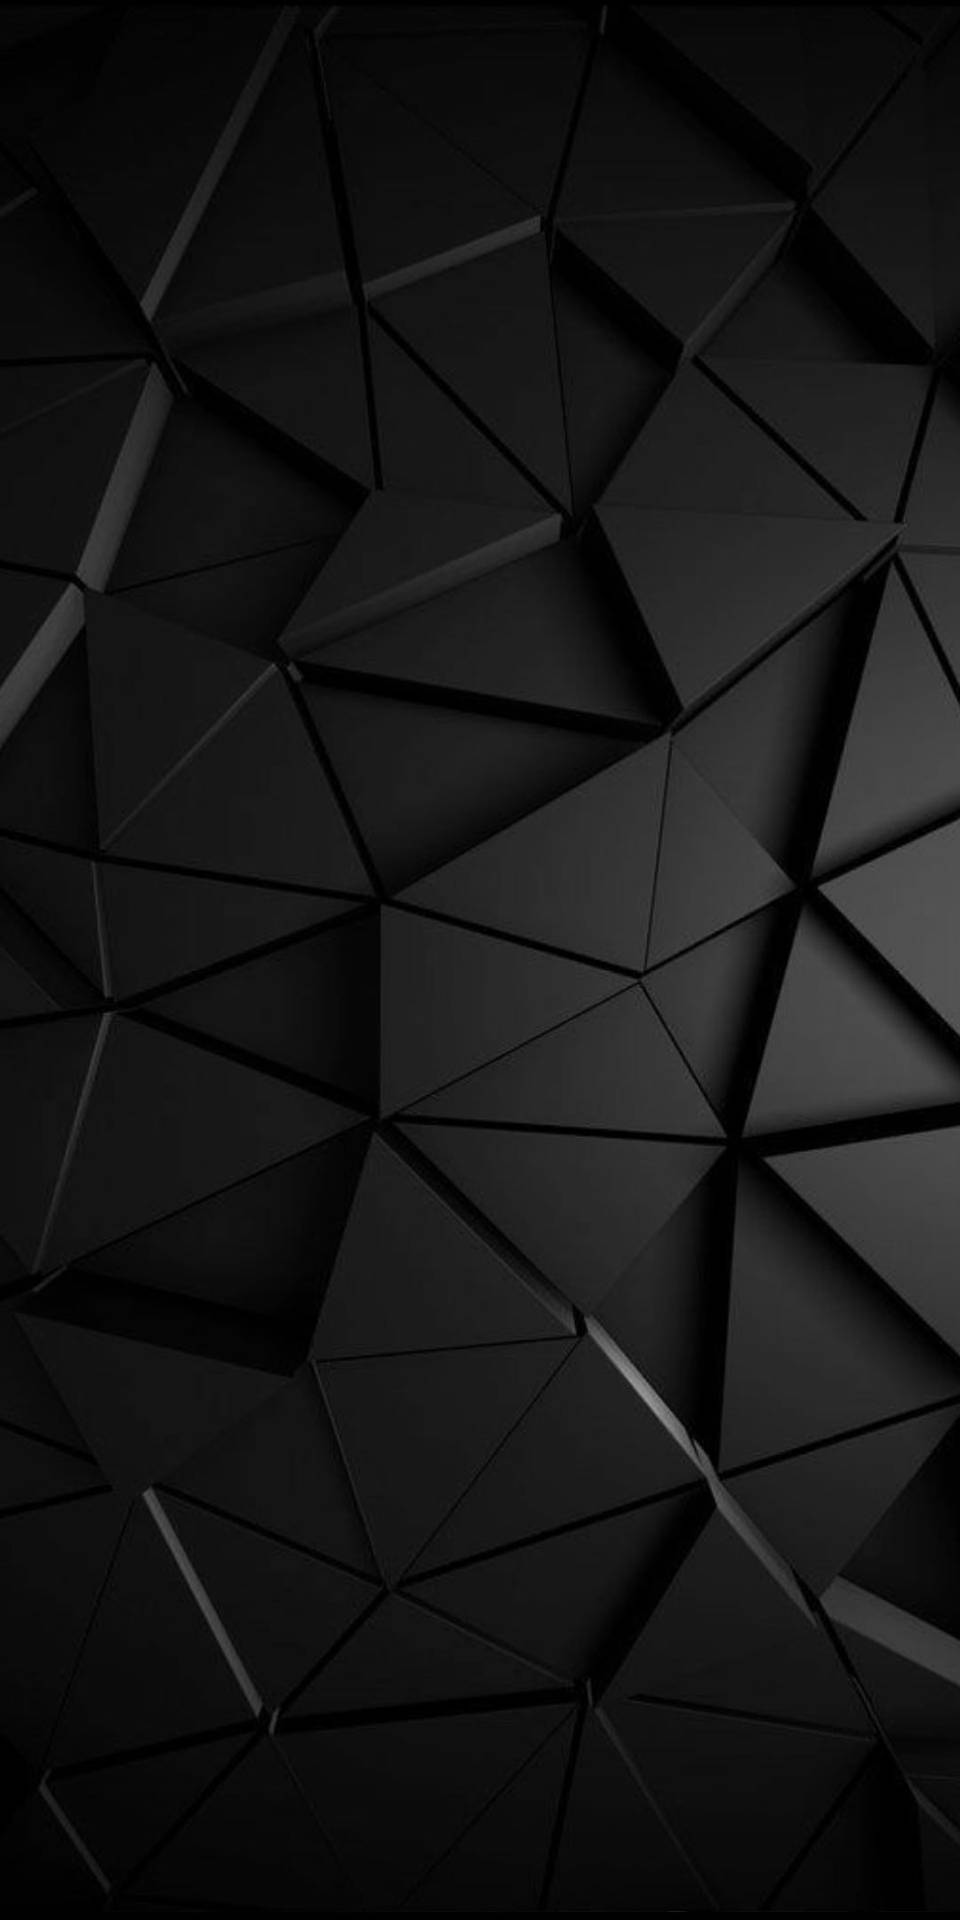 3D Geometric Triangle Black Pattern Wallpaper